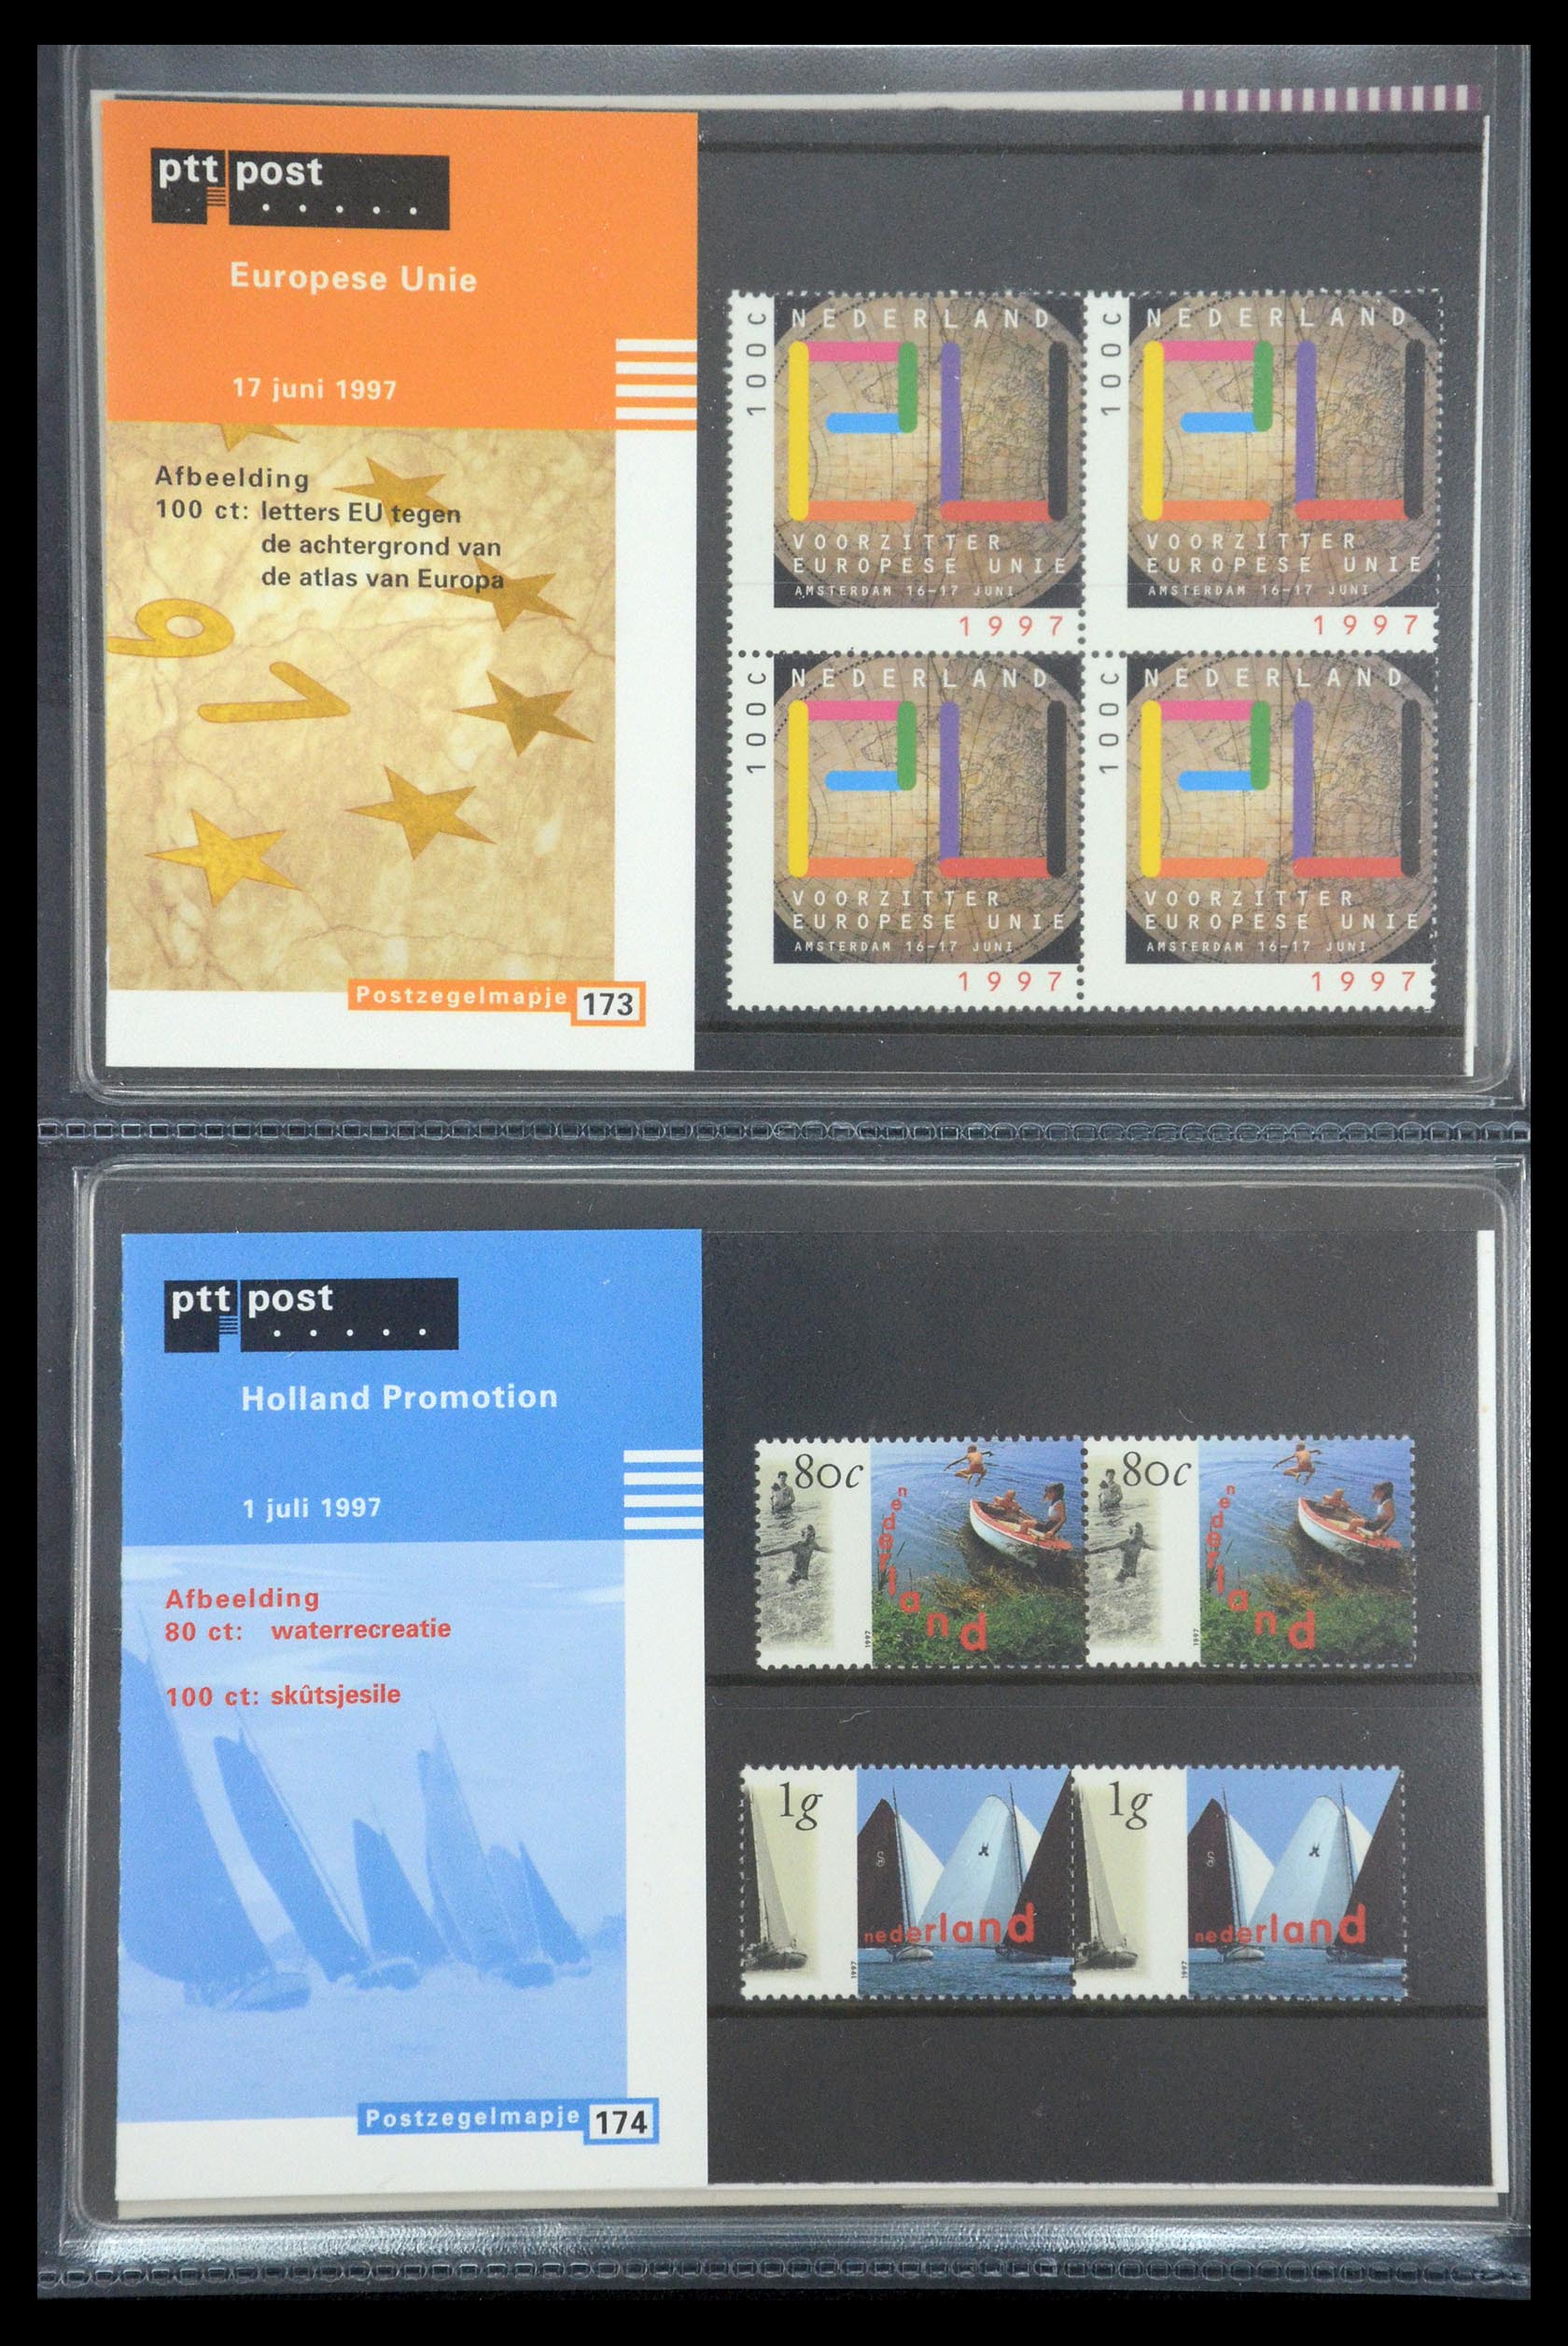 35187 089 - Stamp Collection 35187 Netherlands PTT presentation packs 1982-2019!